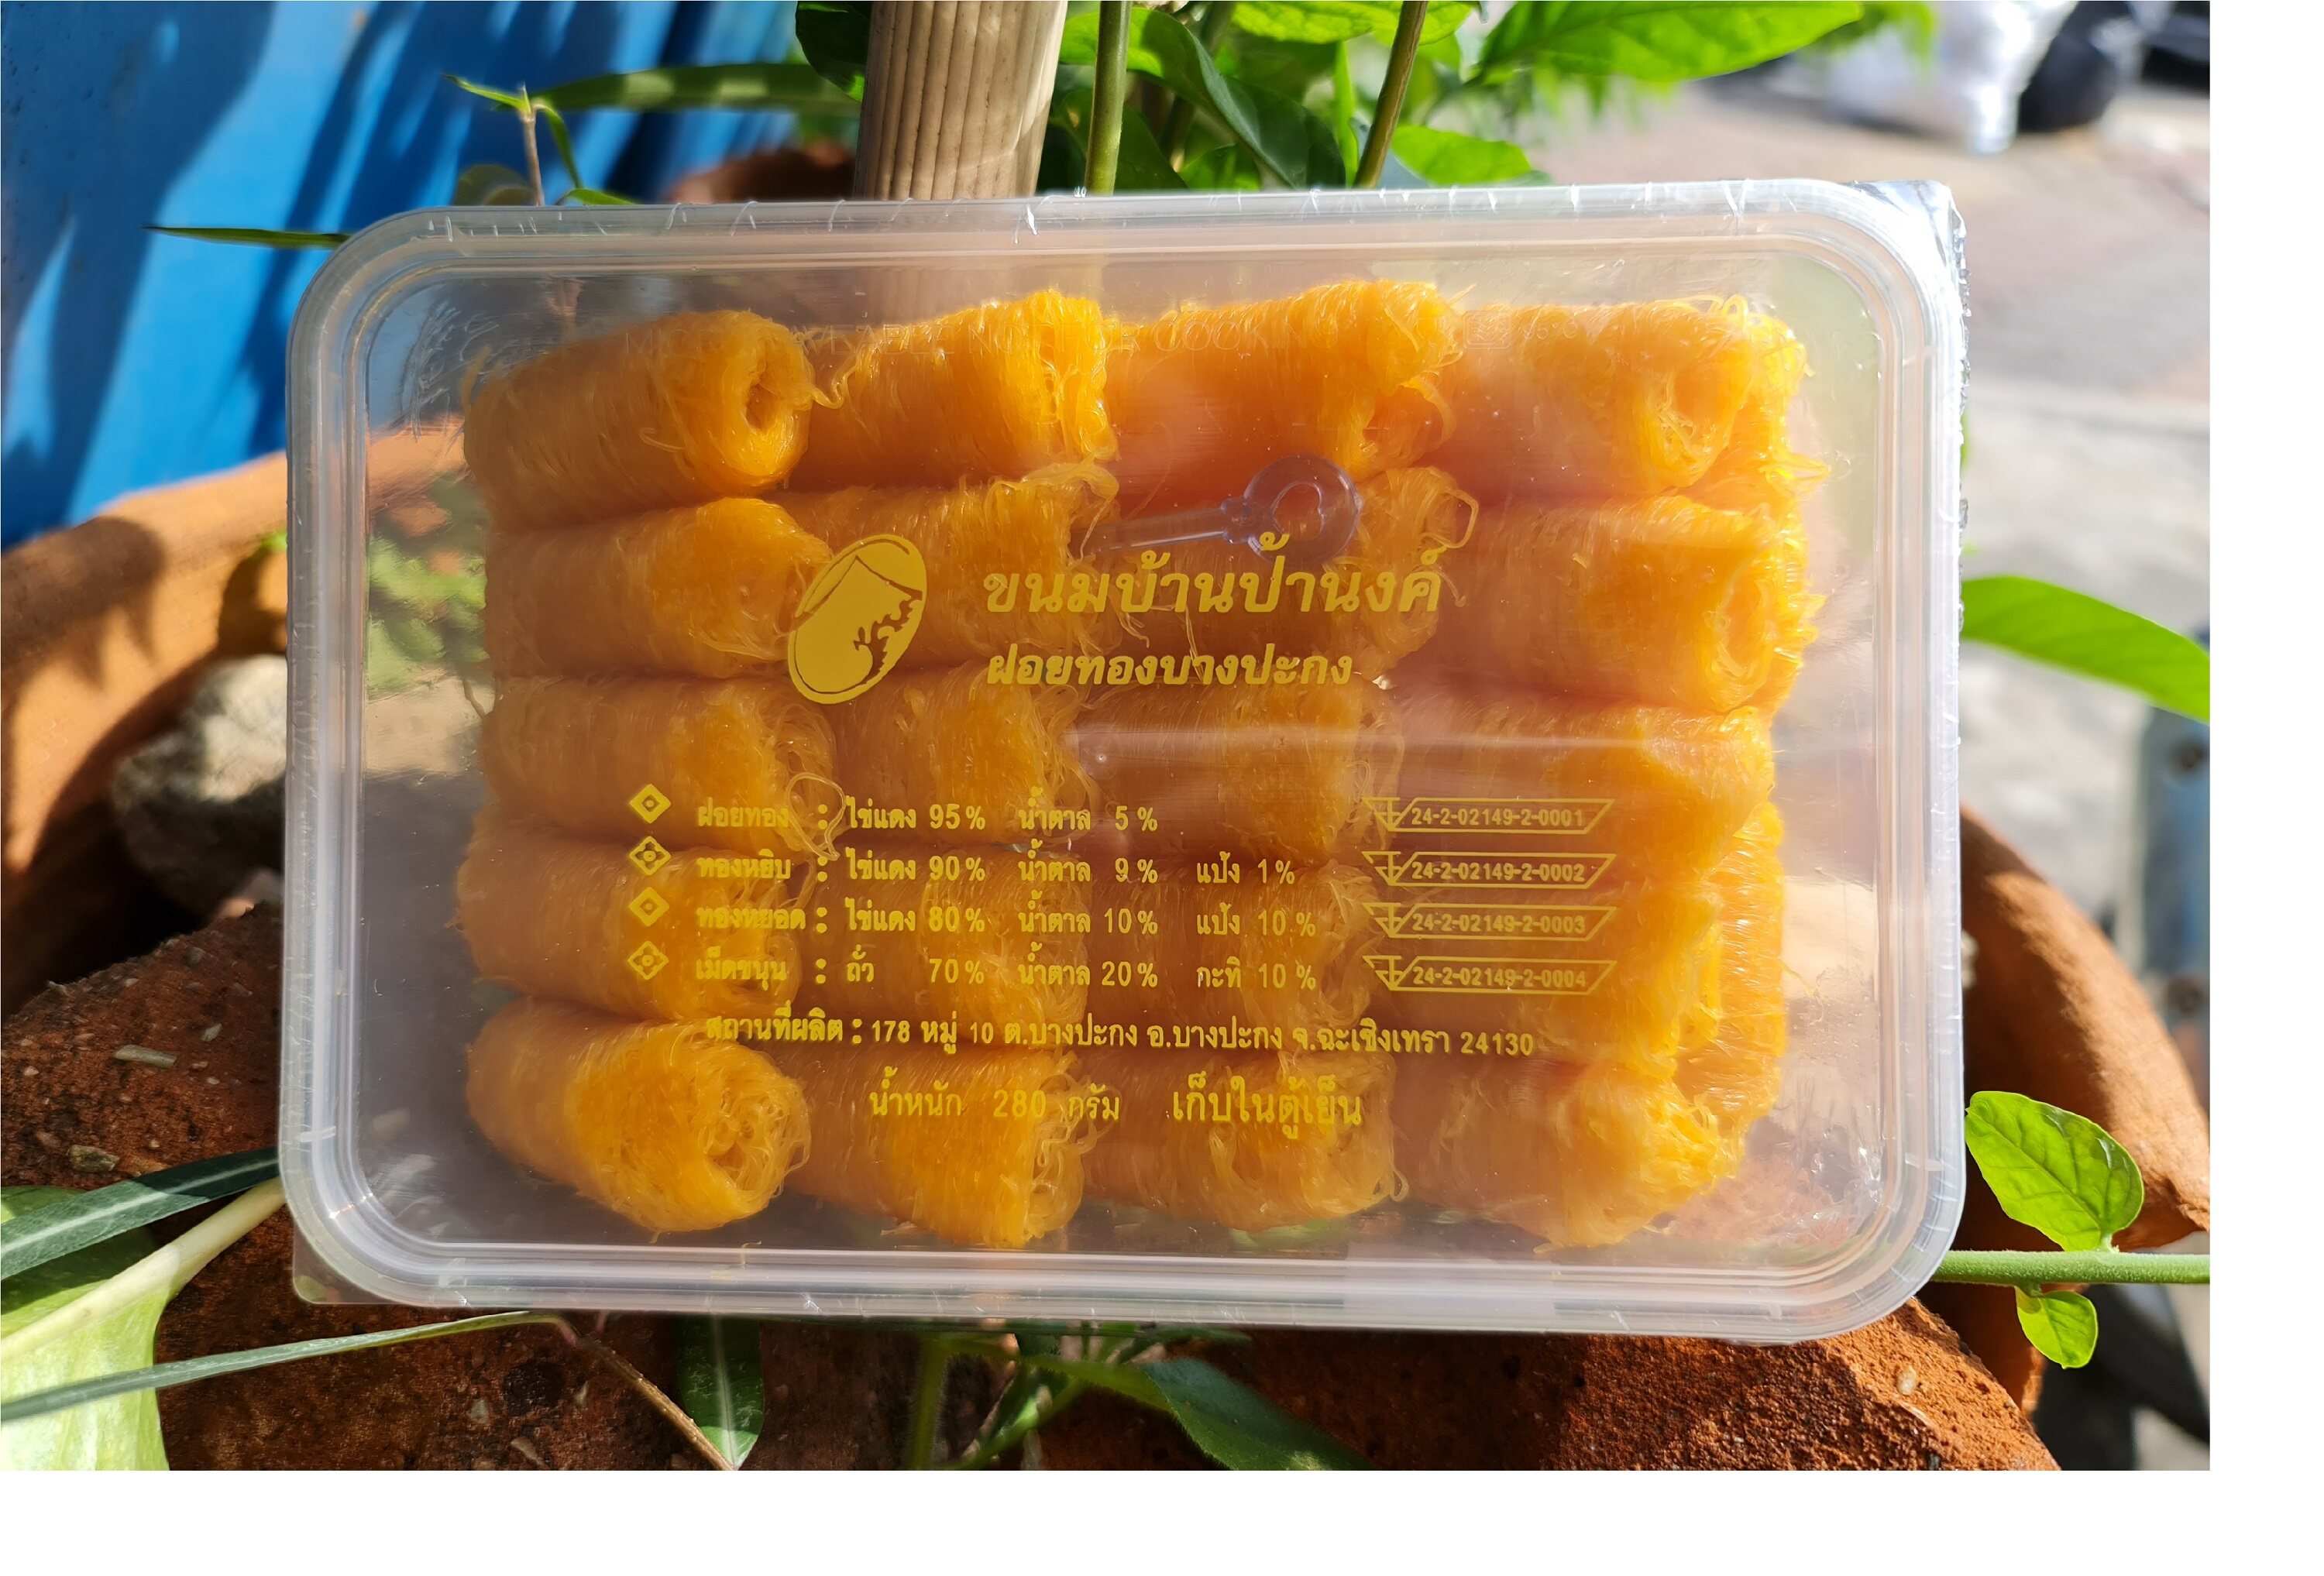 ฝอยทองป้านงค์กล่องกลาง 22ชิ้น  ขนมบ้านป้านงค์ ของอร่อยบางปะกง บริการจัดส่งทั่วไทย